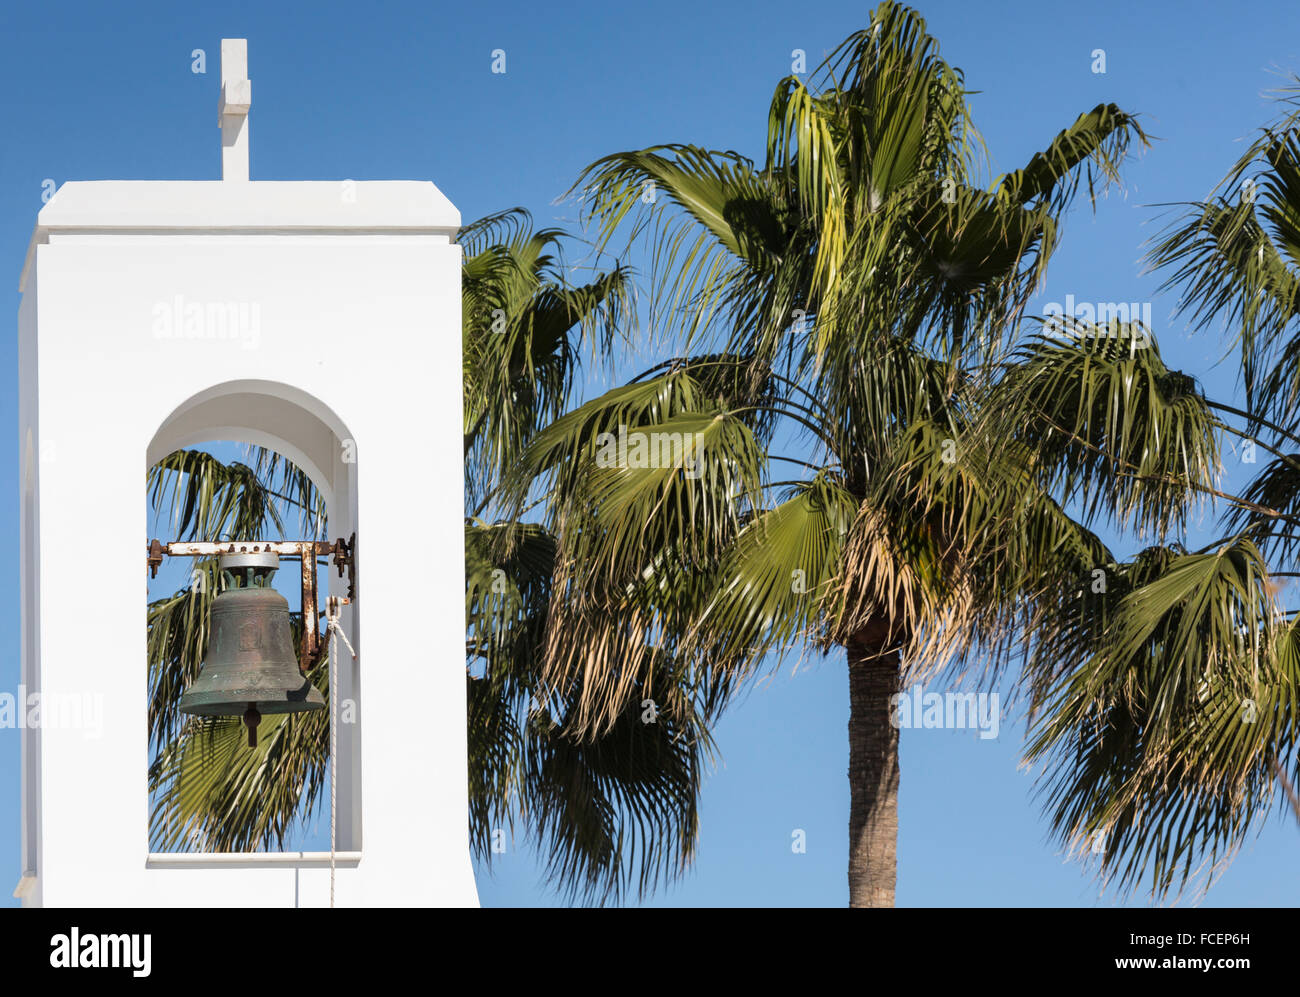 White church and palms, Agia napa, Cyprus Stock Photo